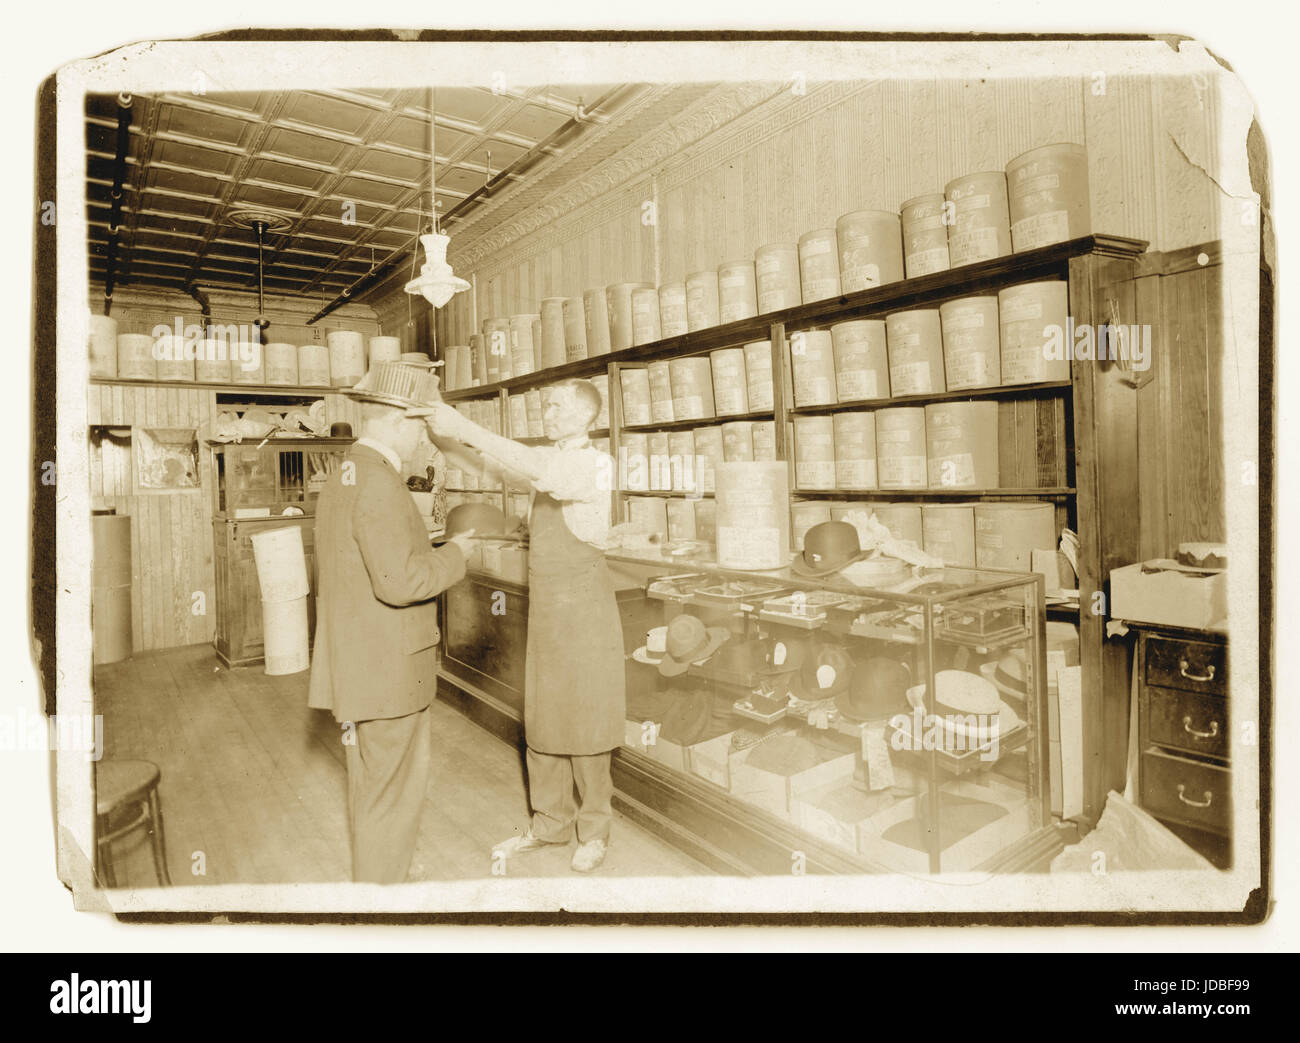 Originalfoto Anfang der 1900er Jahre von Hüten/Mitarbeitern oder Assistenten im viktorianischen Ladeninneren, mit einem Kunden, der aus seinem Ladengelände Tophüte und Strohboote verkauft und Hüte verkauft, die in Boxen C. Lukasch The Hatter, Großbritannien, beschriftet sind Stockfoto